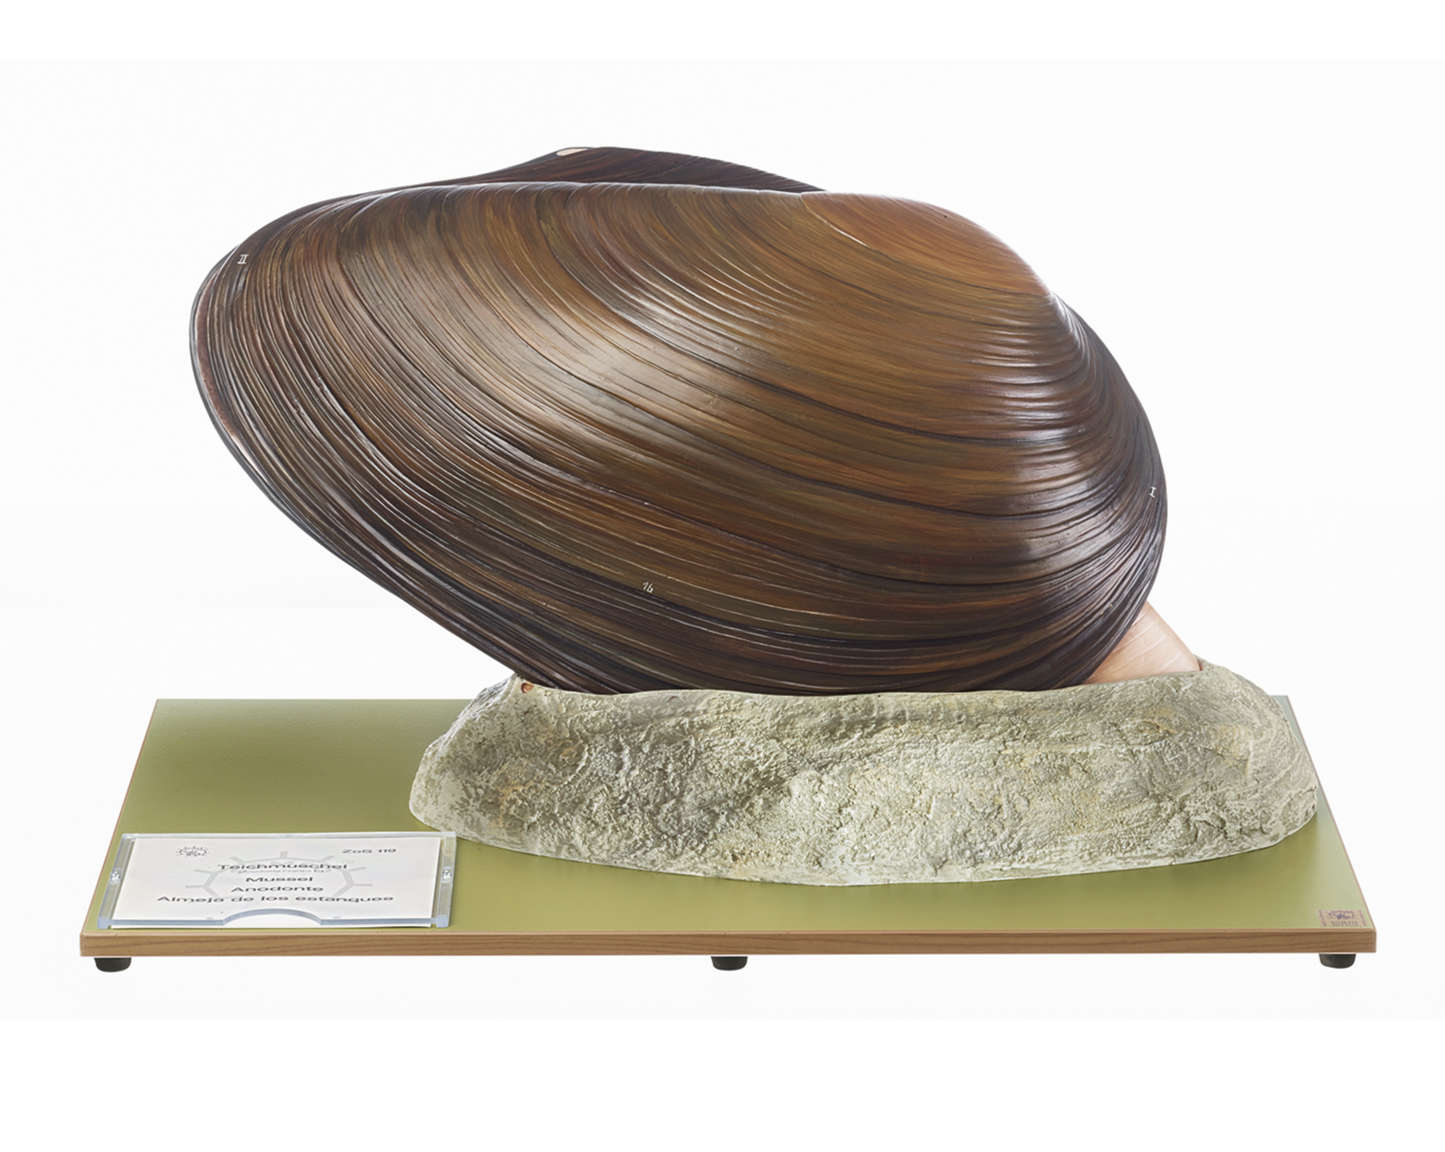 Modell av en mussla (Anodonta cygnea) i högsta kvalitet och förstorad. Kan delas upp i 5 delar